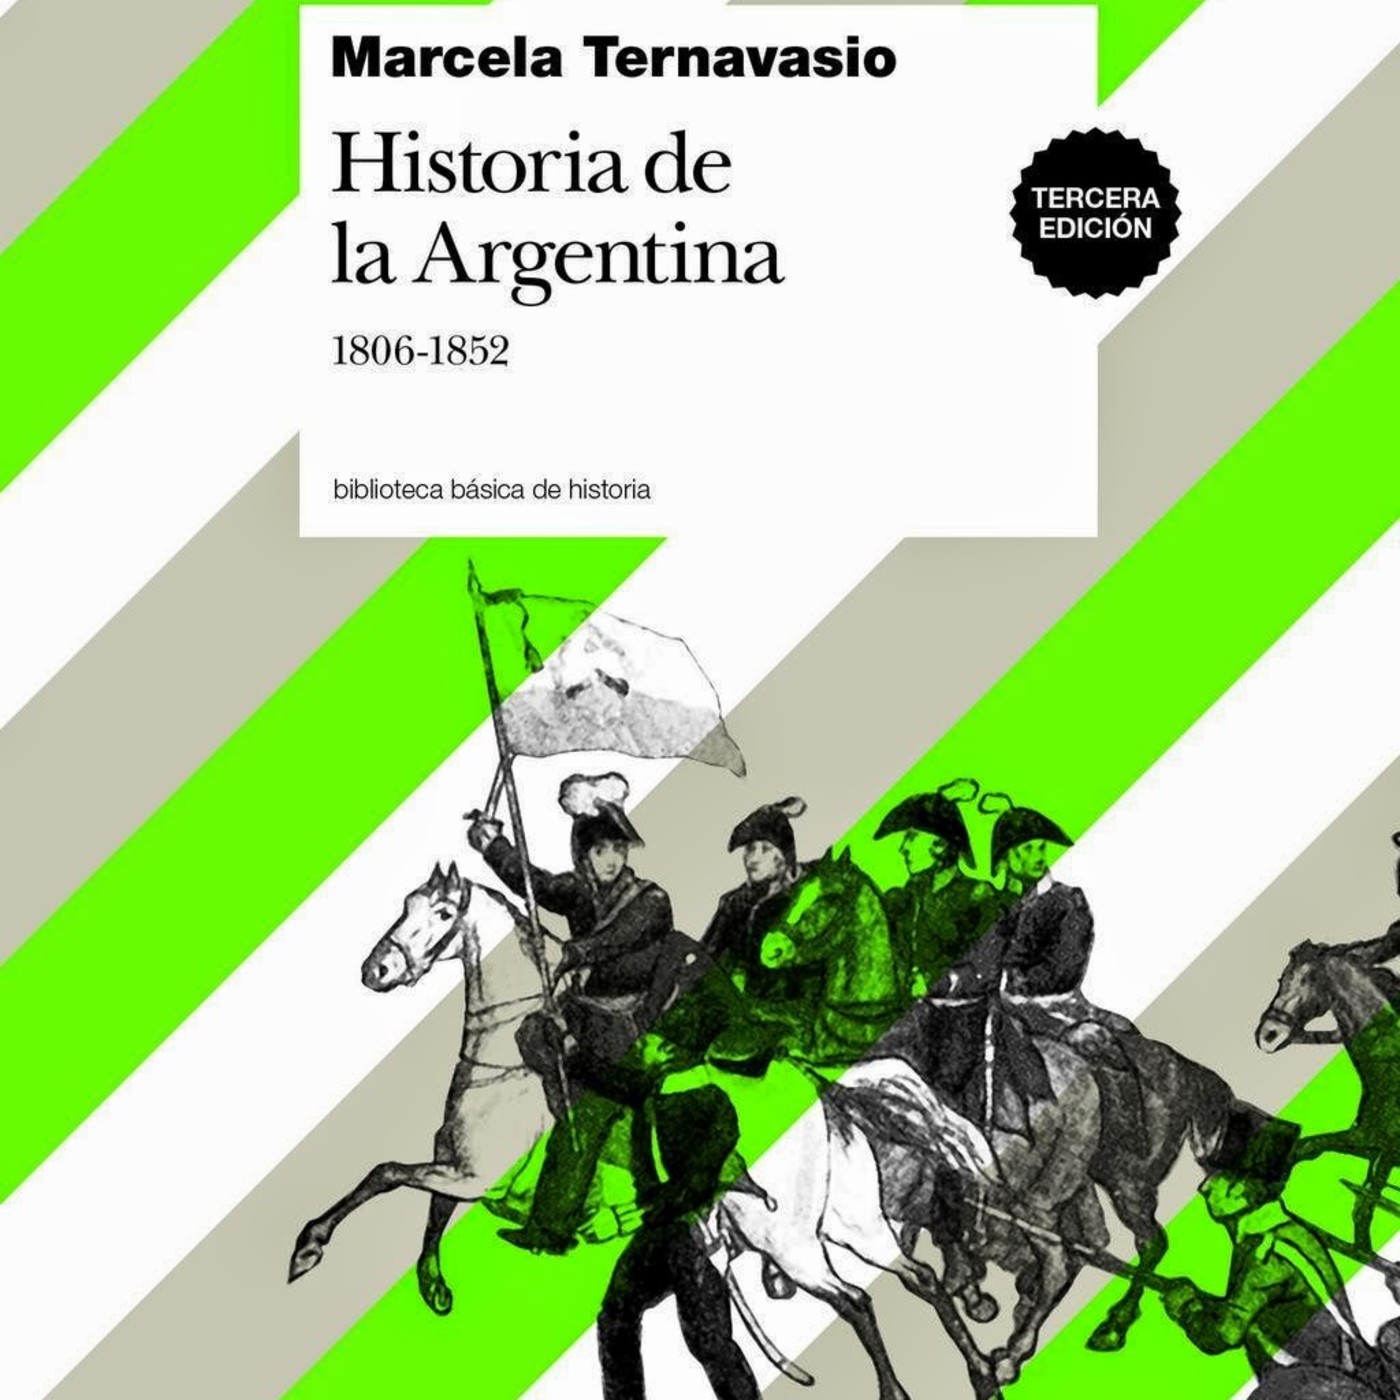 Marcela Ternavasio, Historia argentina 1806-1852